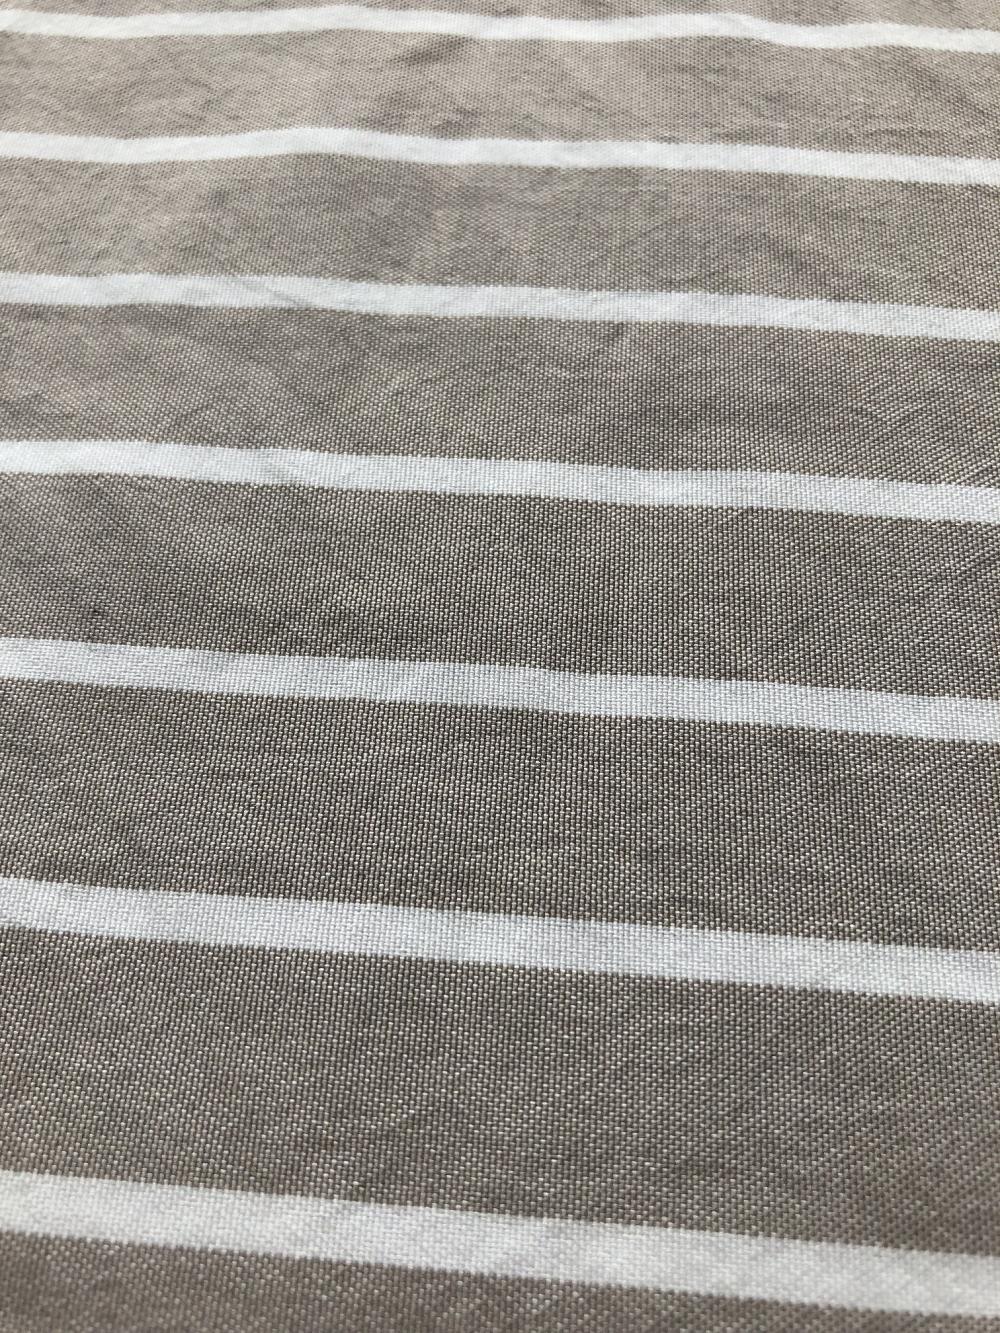 Soft Yarn Dyed Fabric